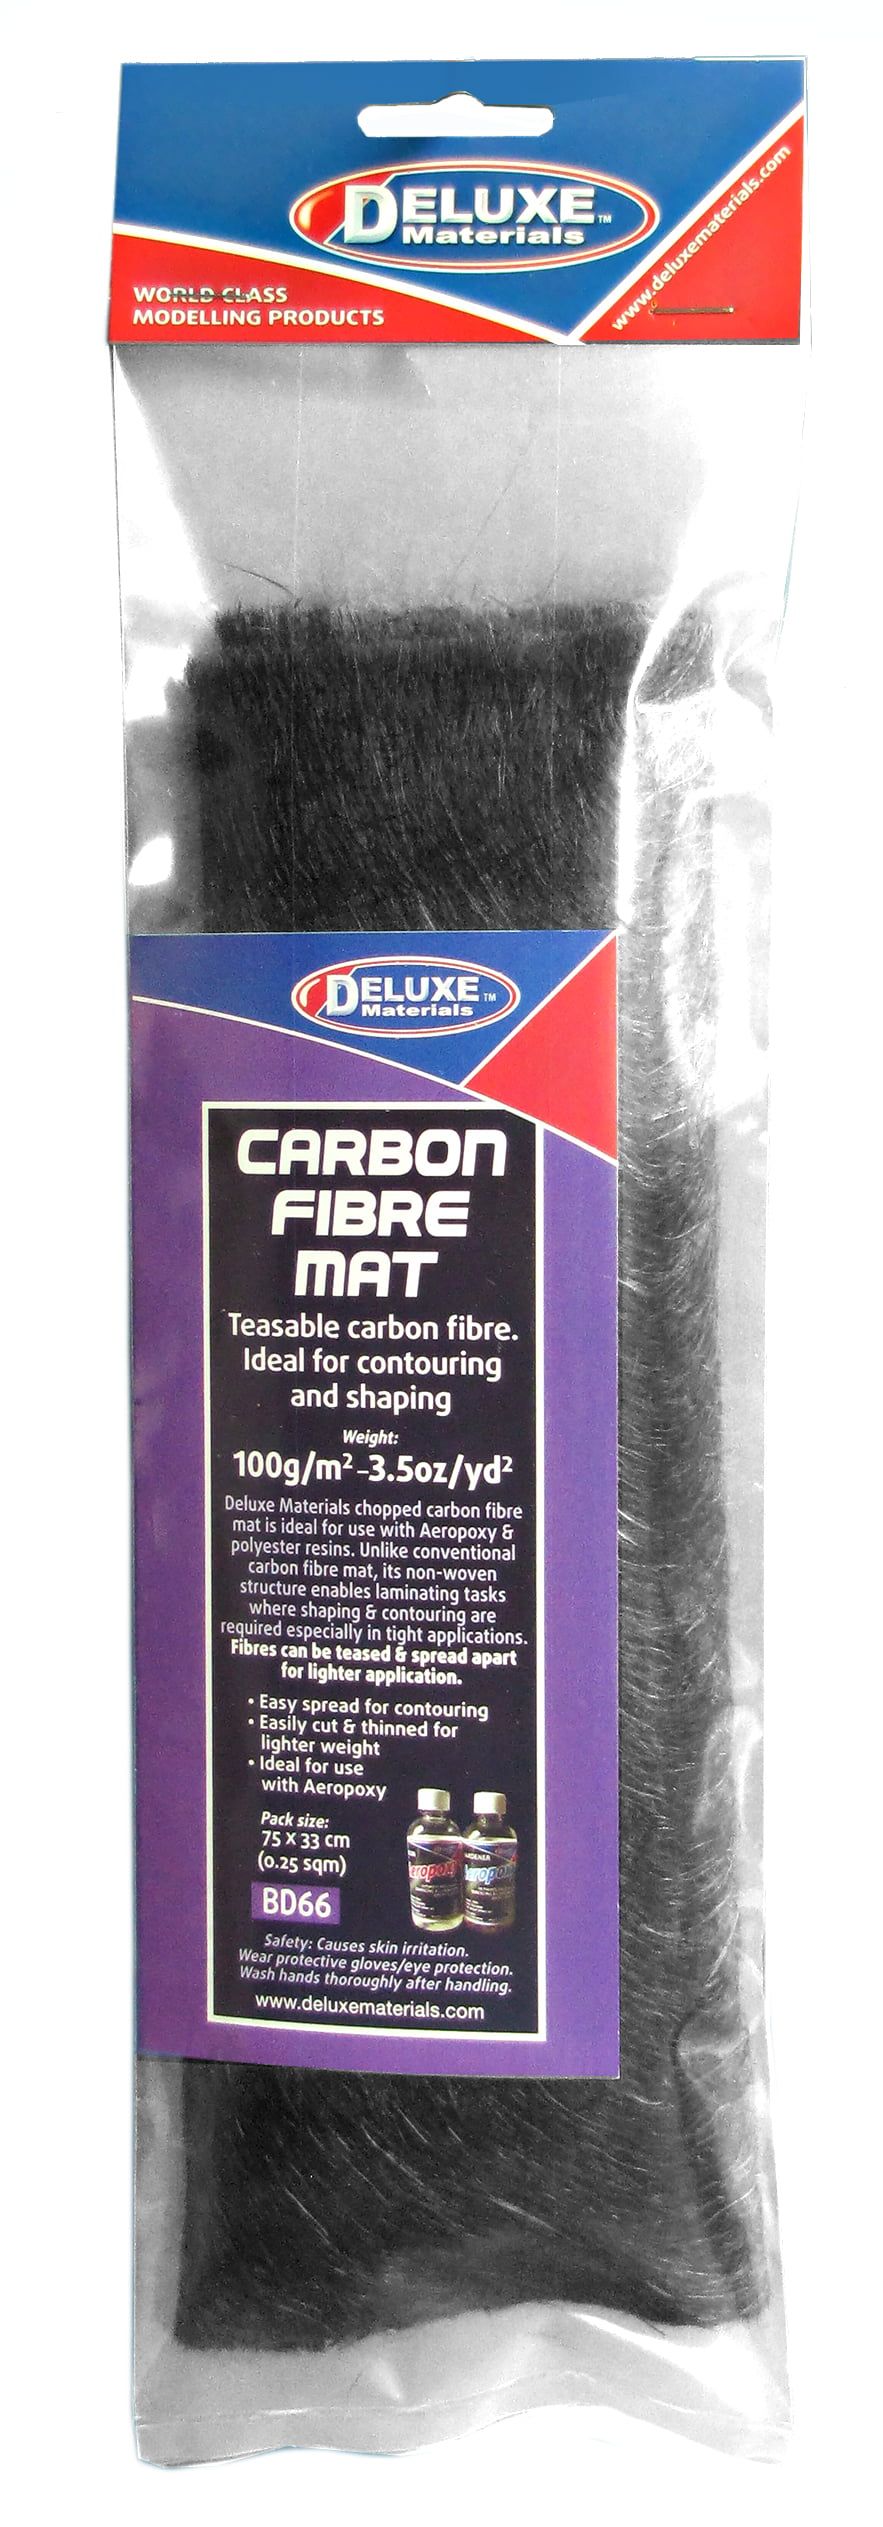 Deluxe Materials Carbon Fibre Mat